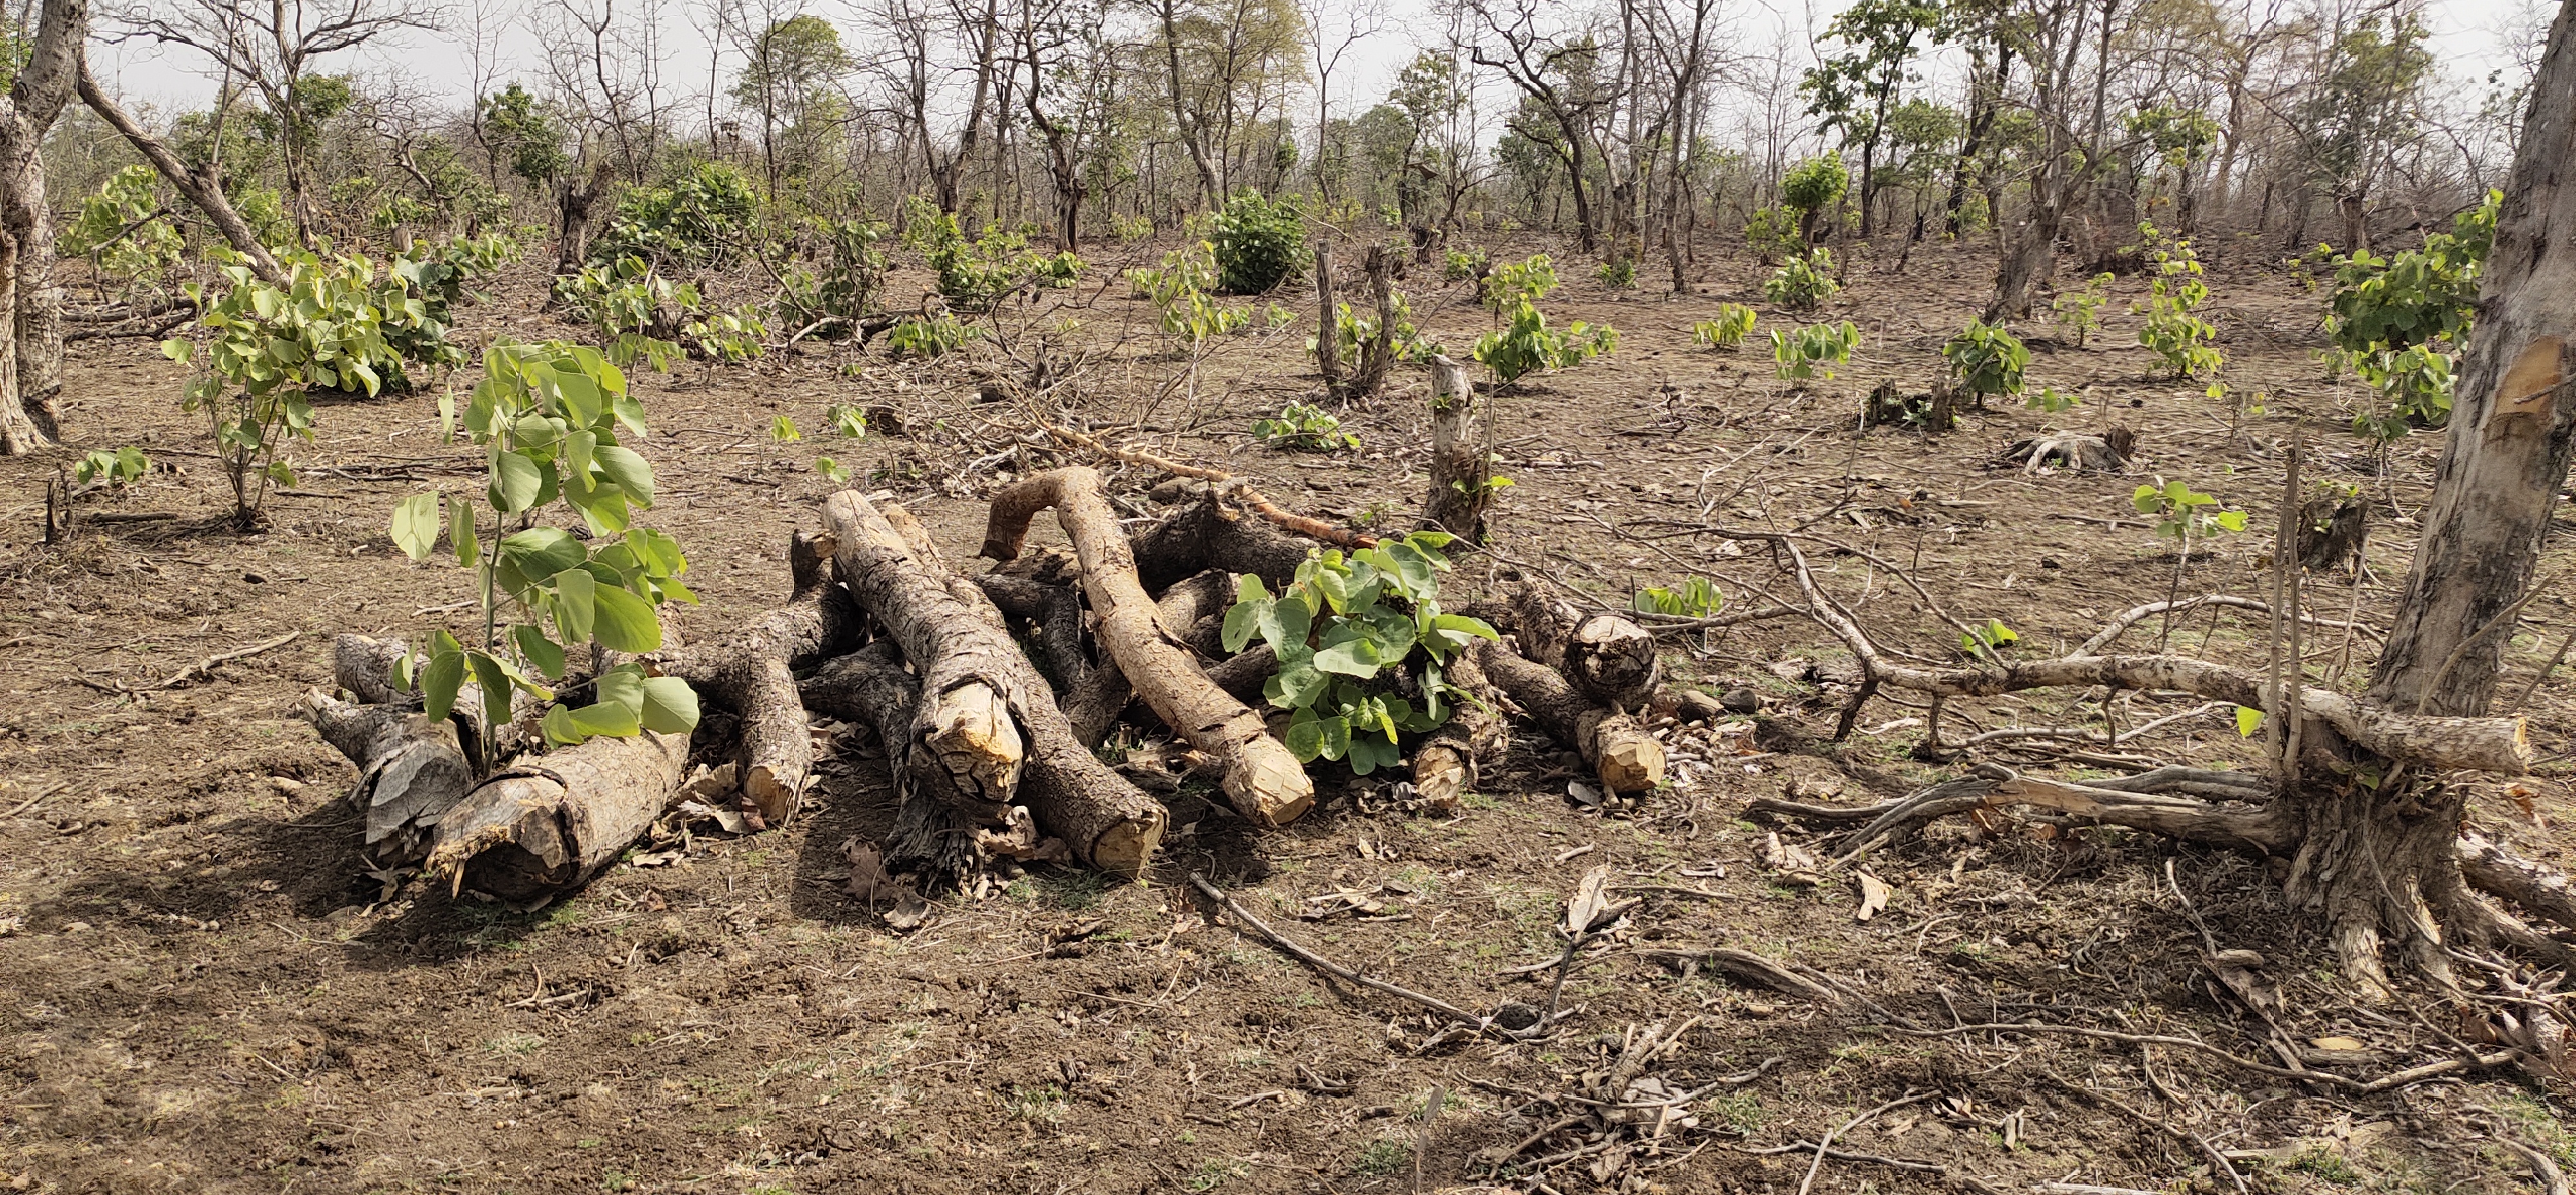 लटेरी में जंगल काटकर मैदान बनाने की साजिश, पेड़ काटकर, जलाकर खत्म कर रहे जंगल